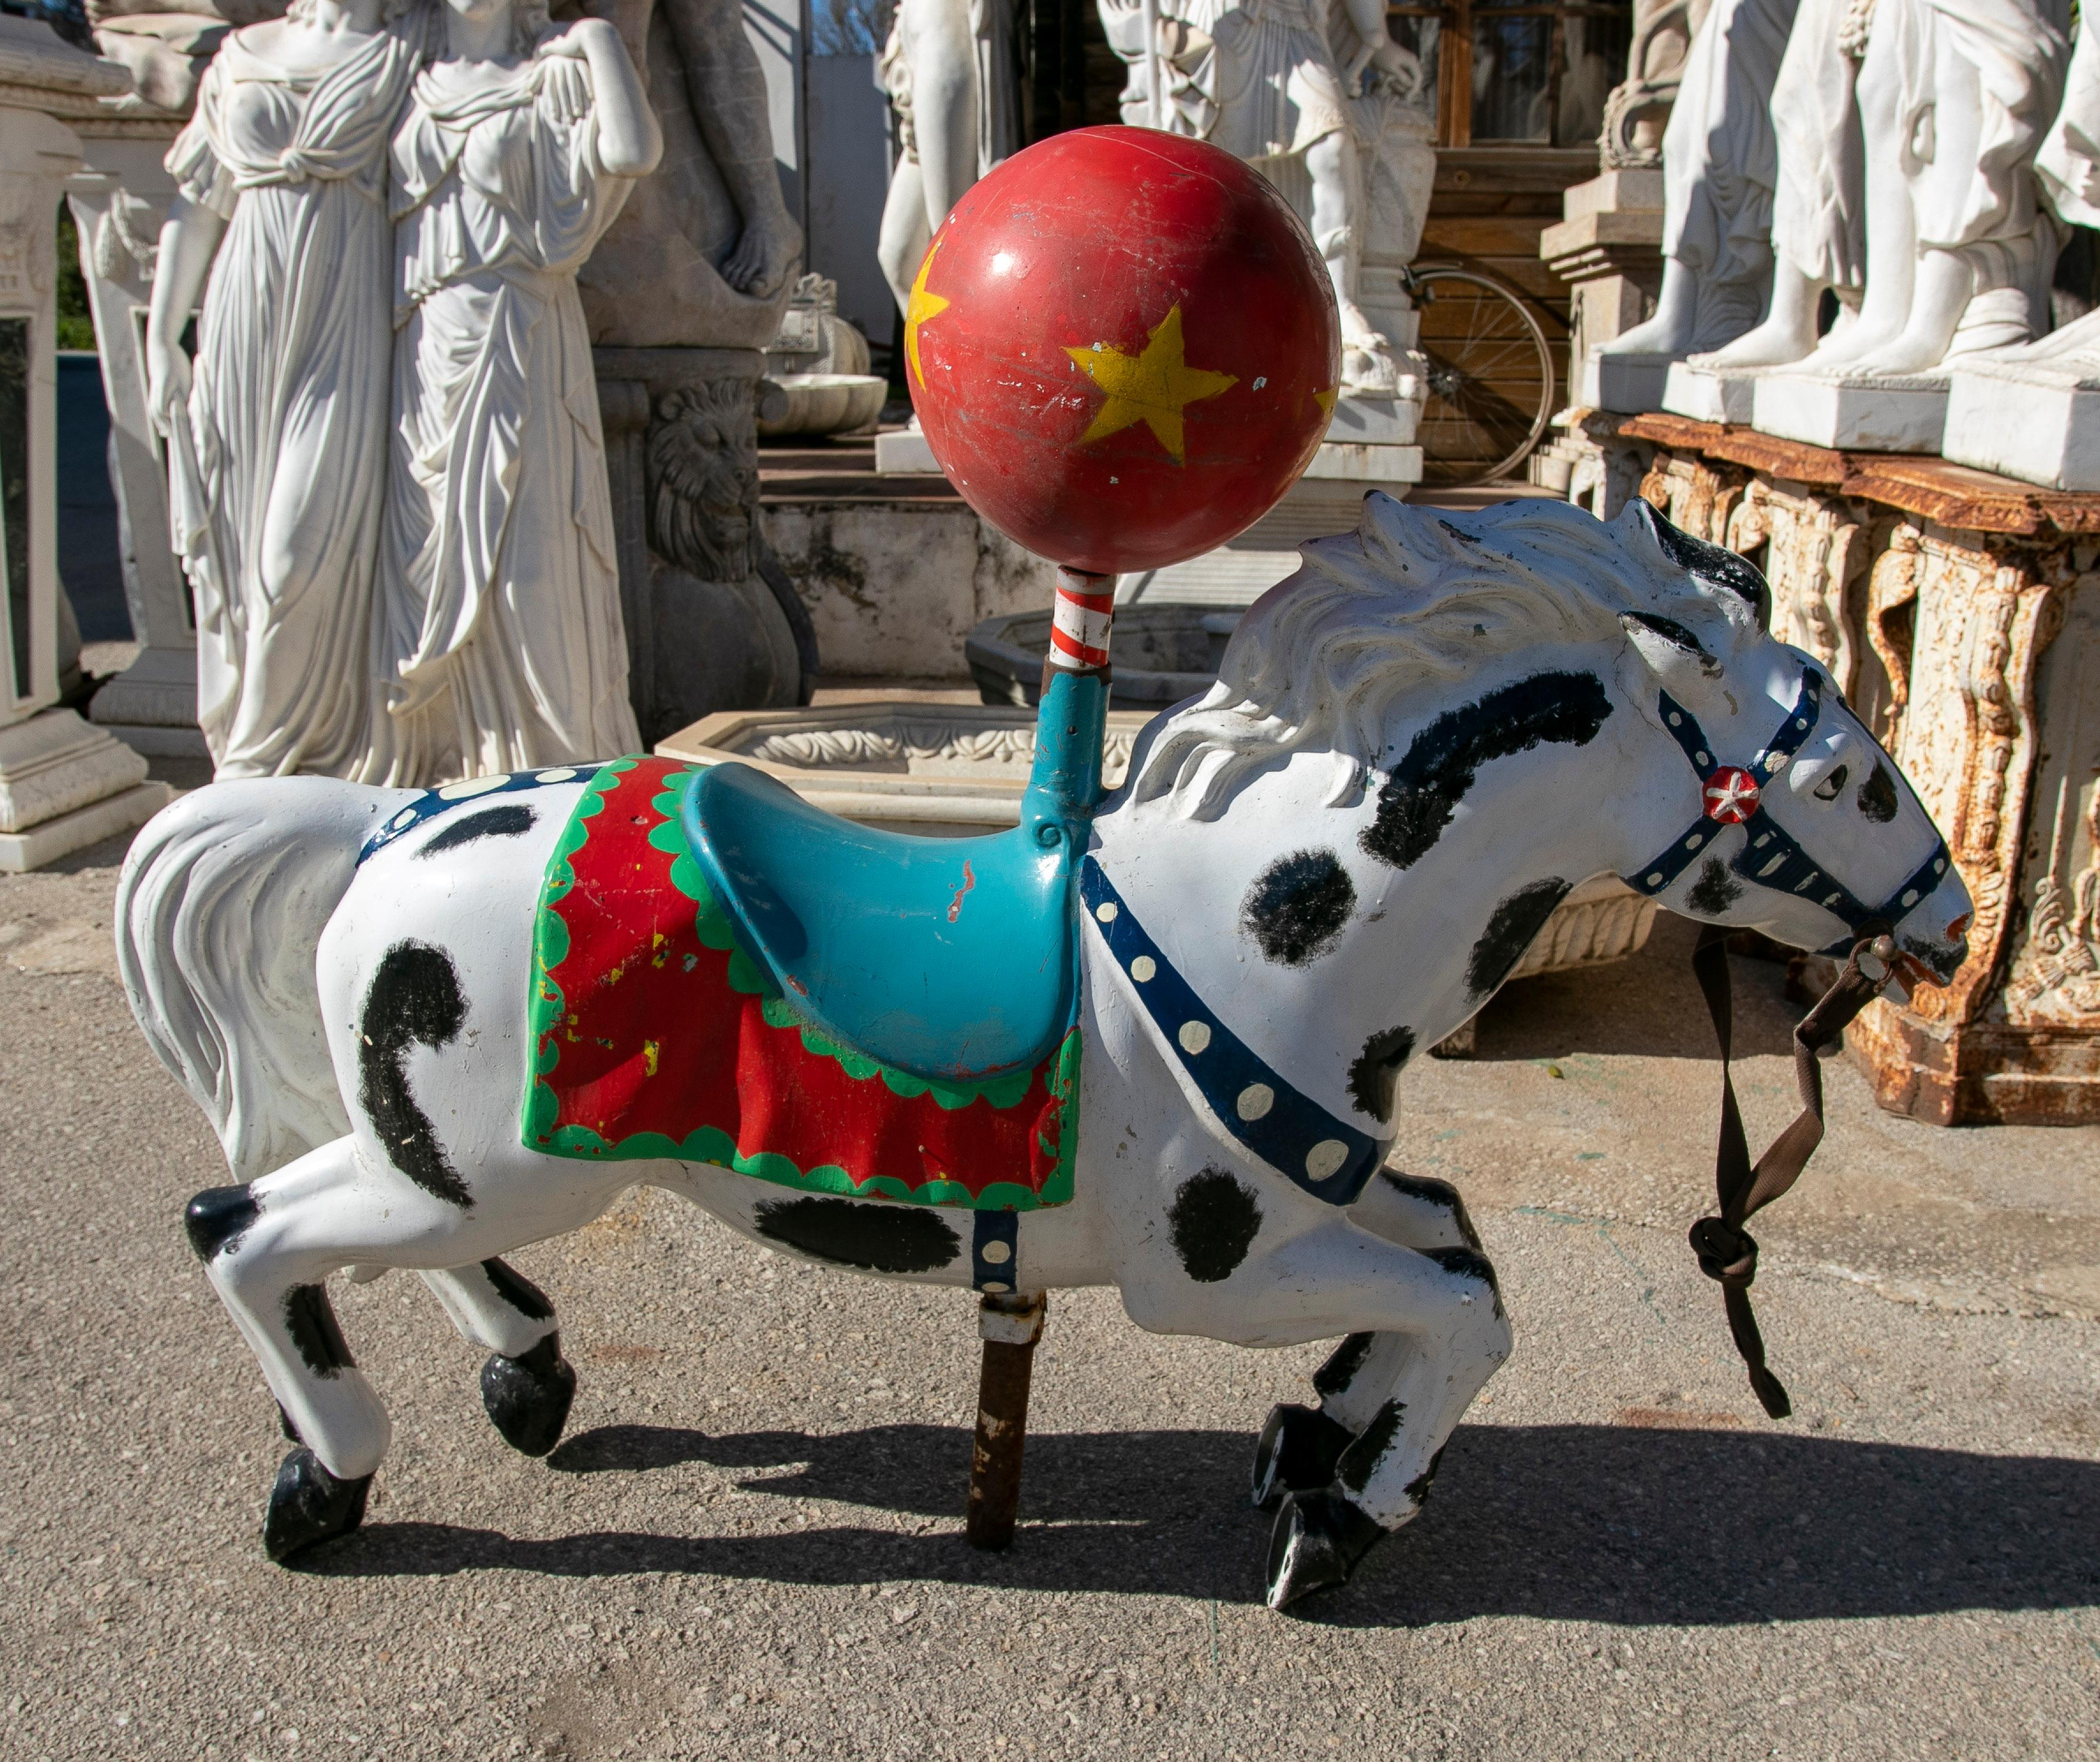 Sculpture espagnole en résine peinte à la main, datant des années 1970, représentant un carrousel de chevaux de foire.